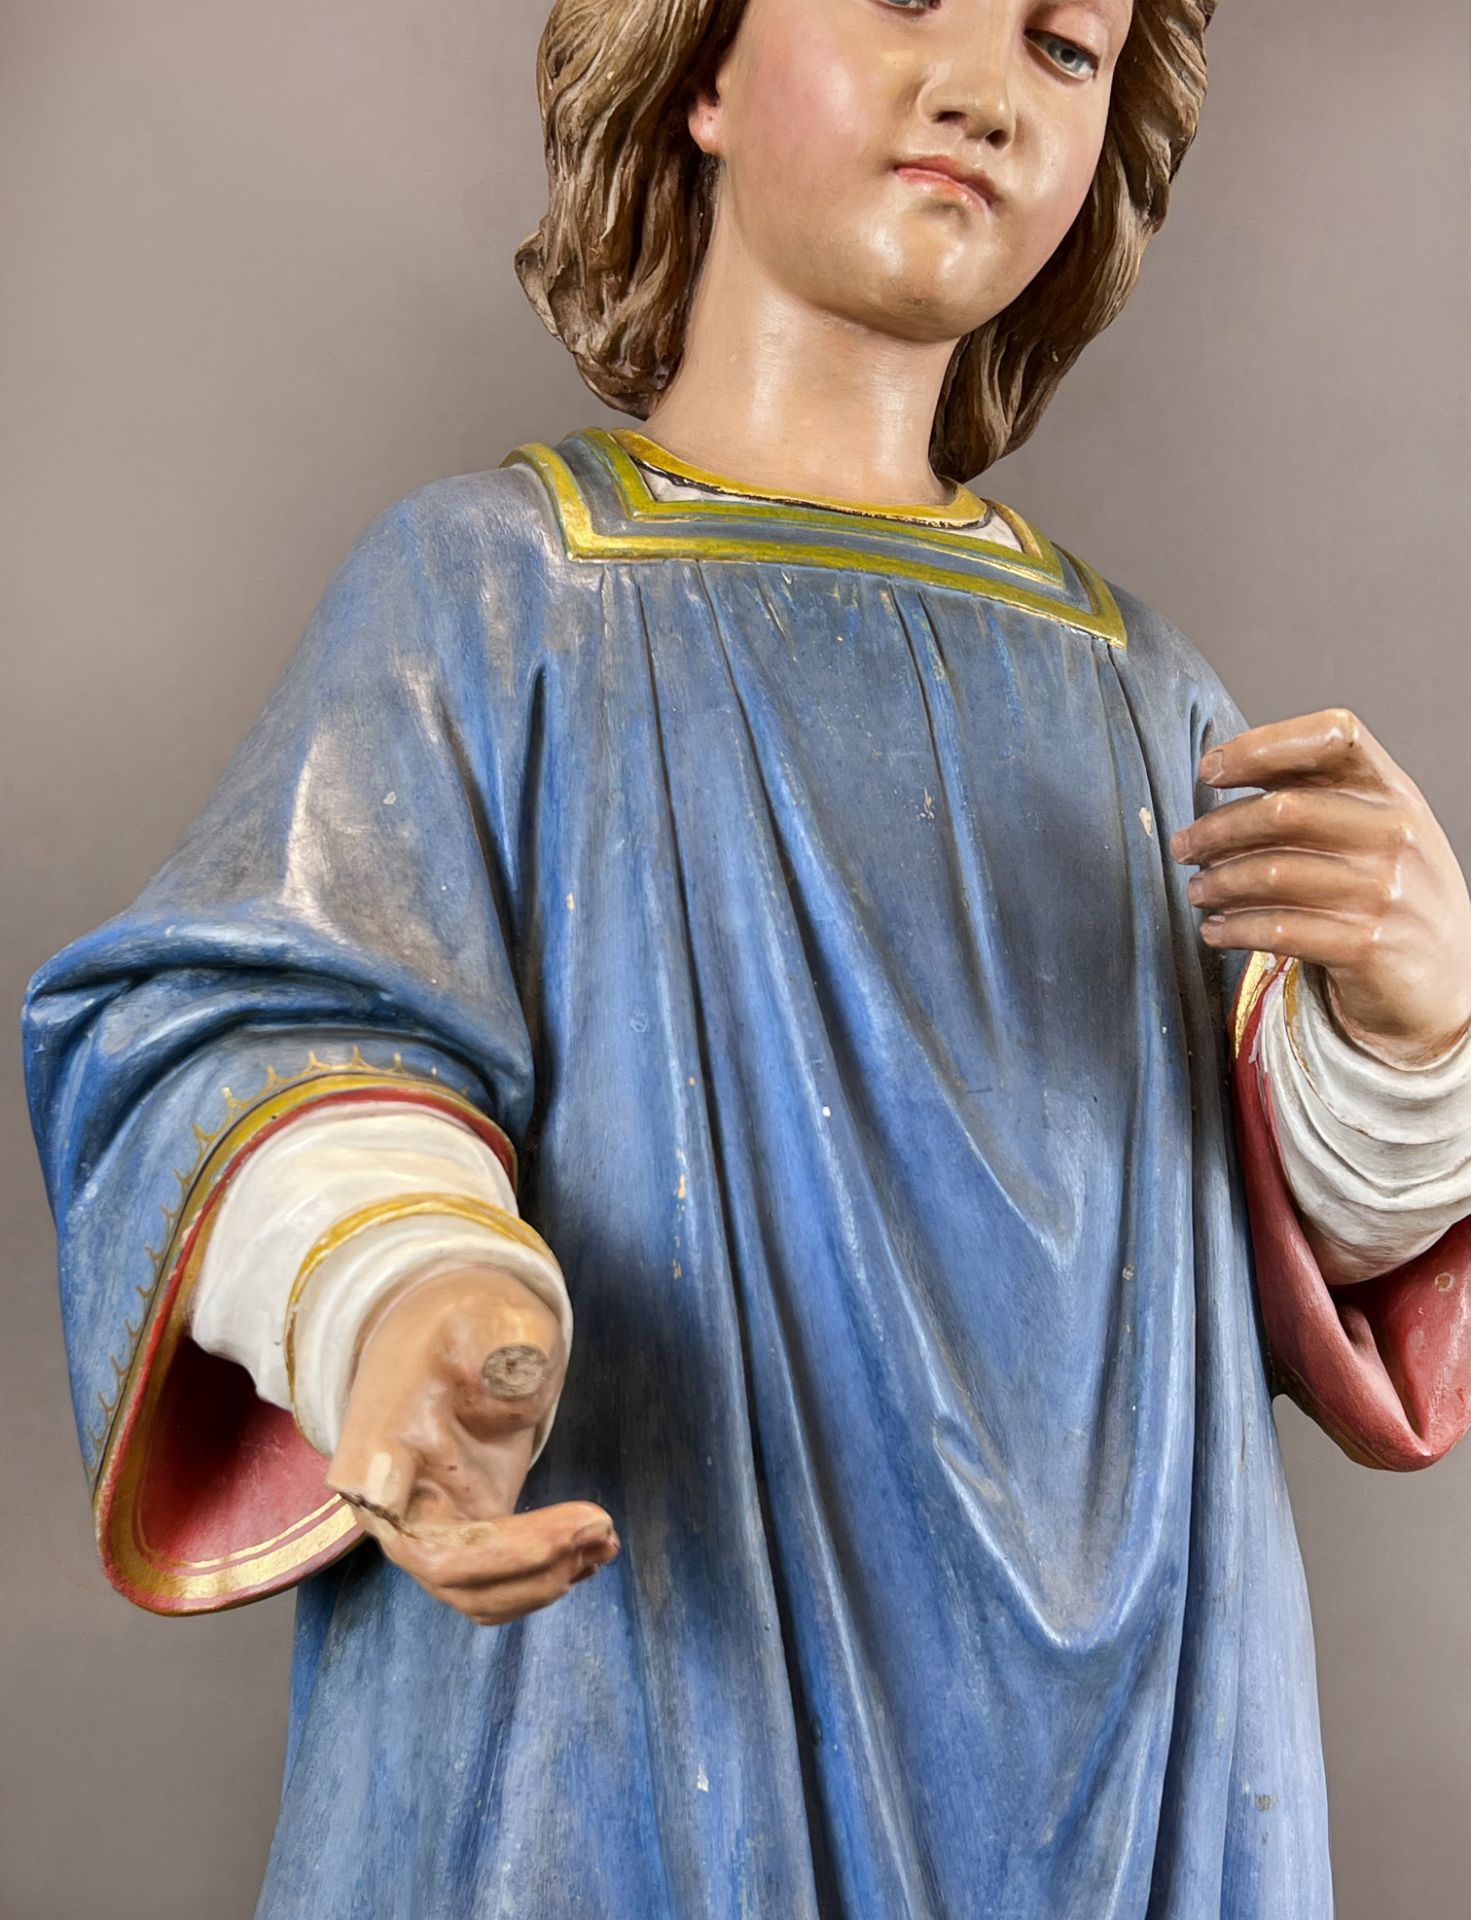 Heiligenfigur. Nazarener. Um 1900. Wohl Italien. - Bild 10 aus 14